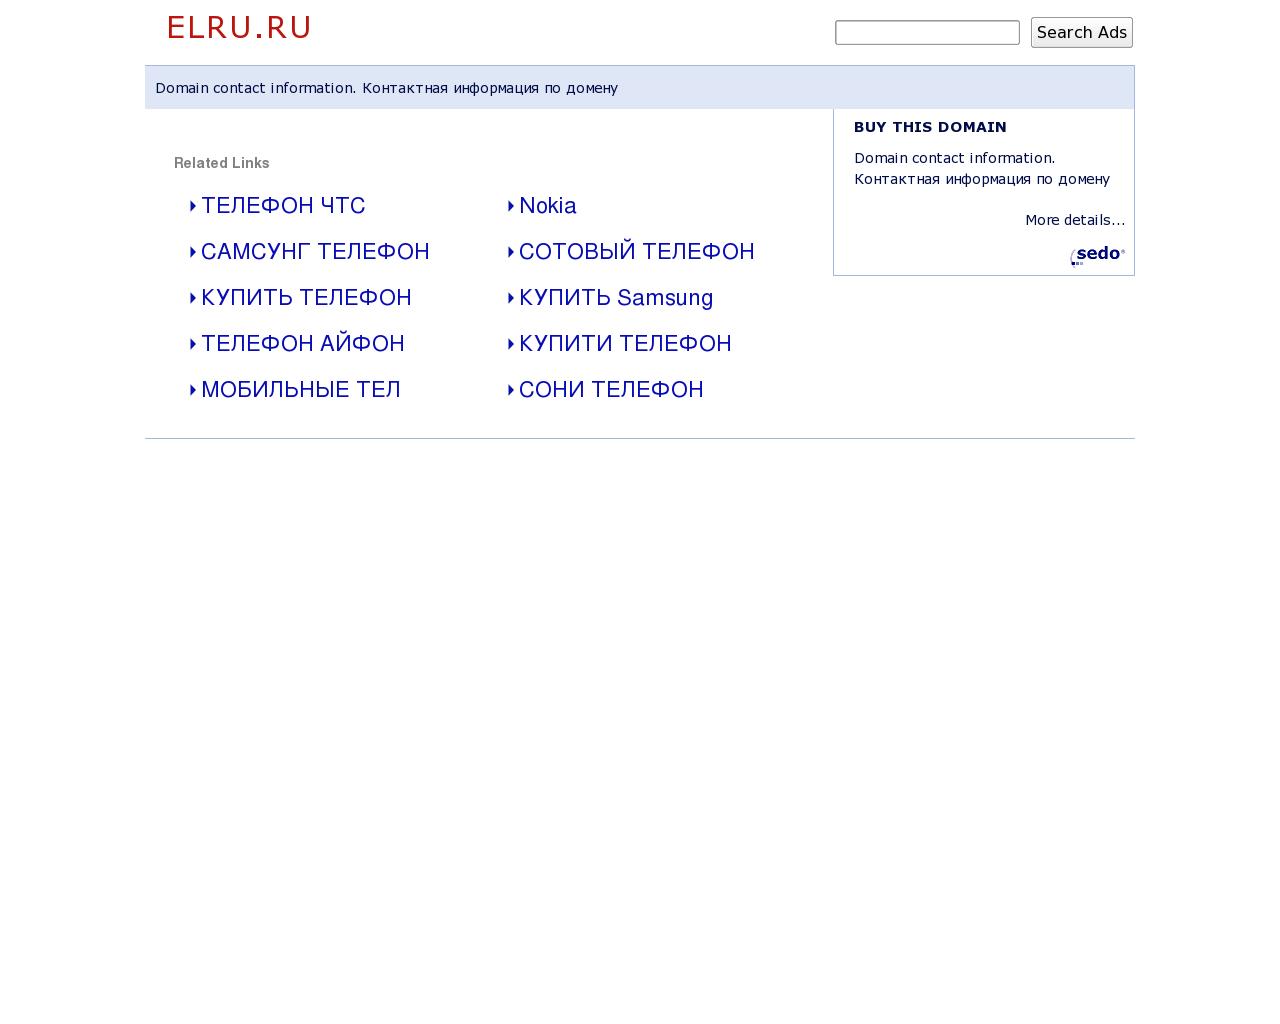 Изображение сайта elru.ru в разрешении 1280x1024